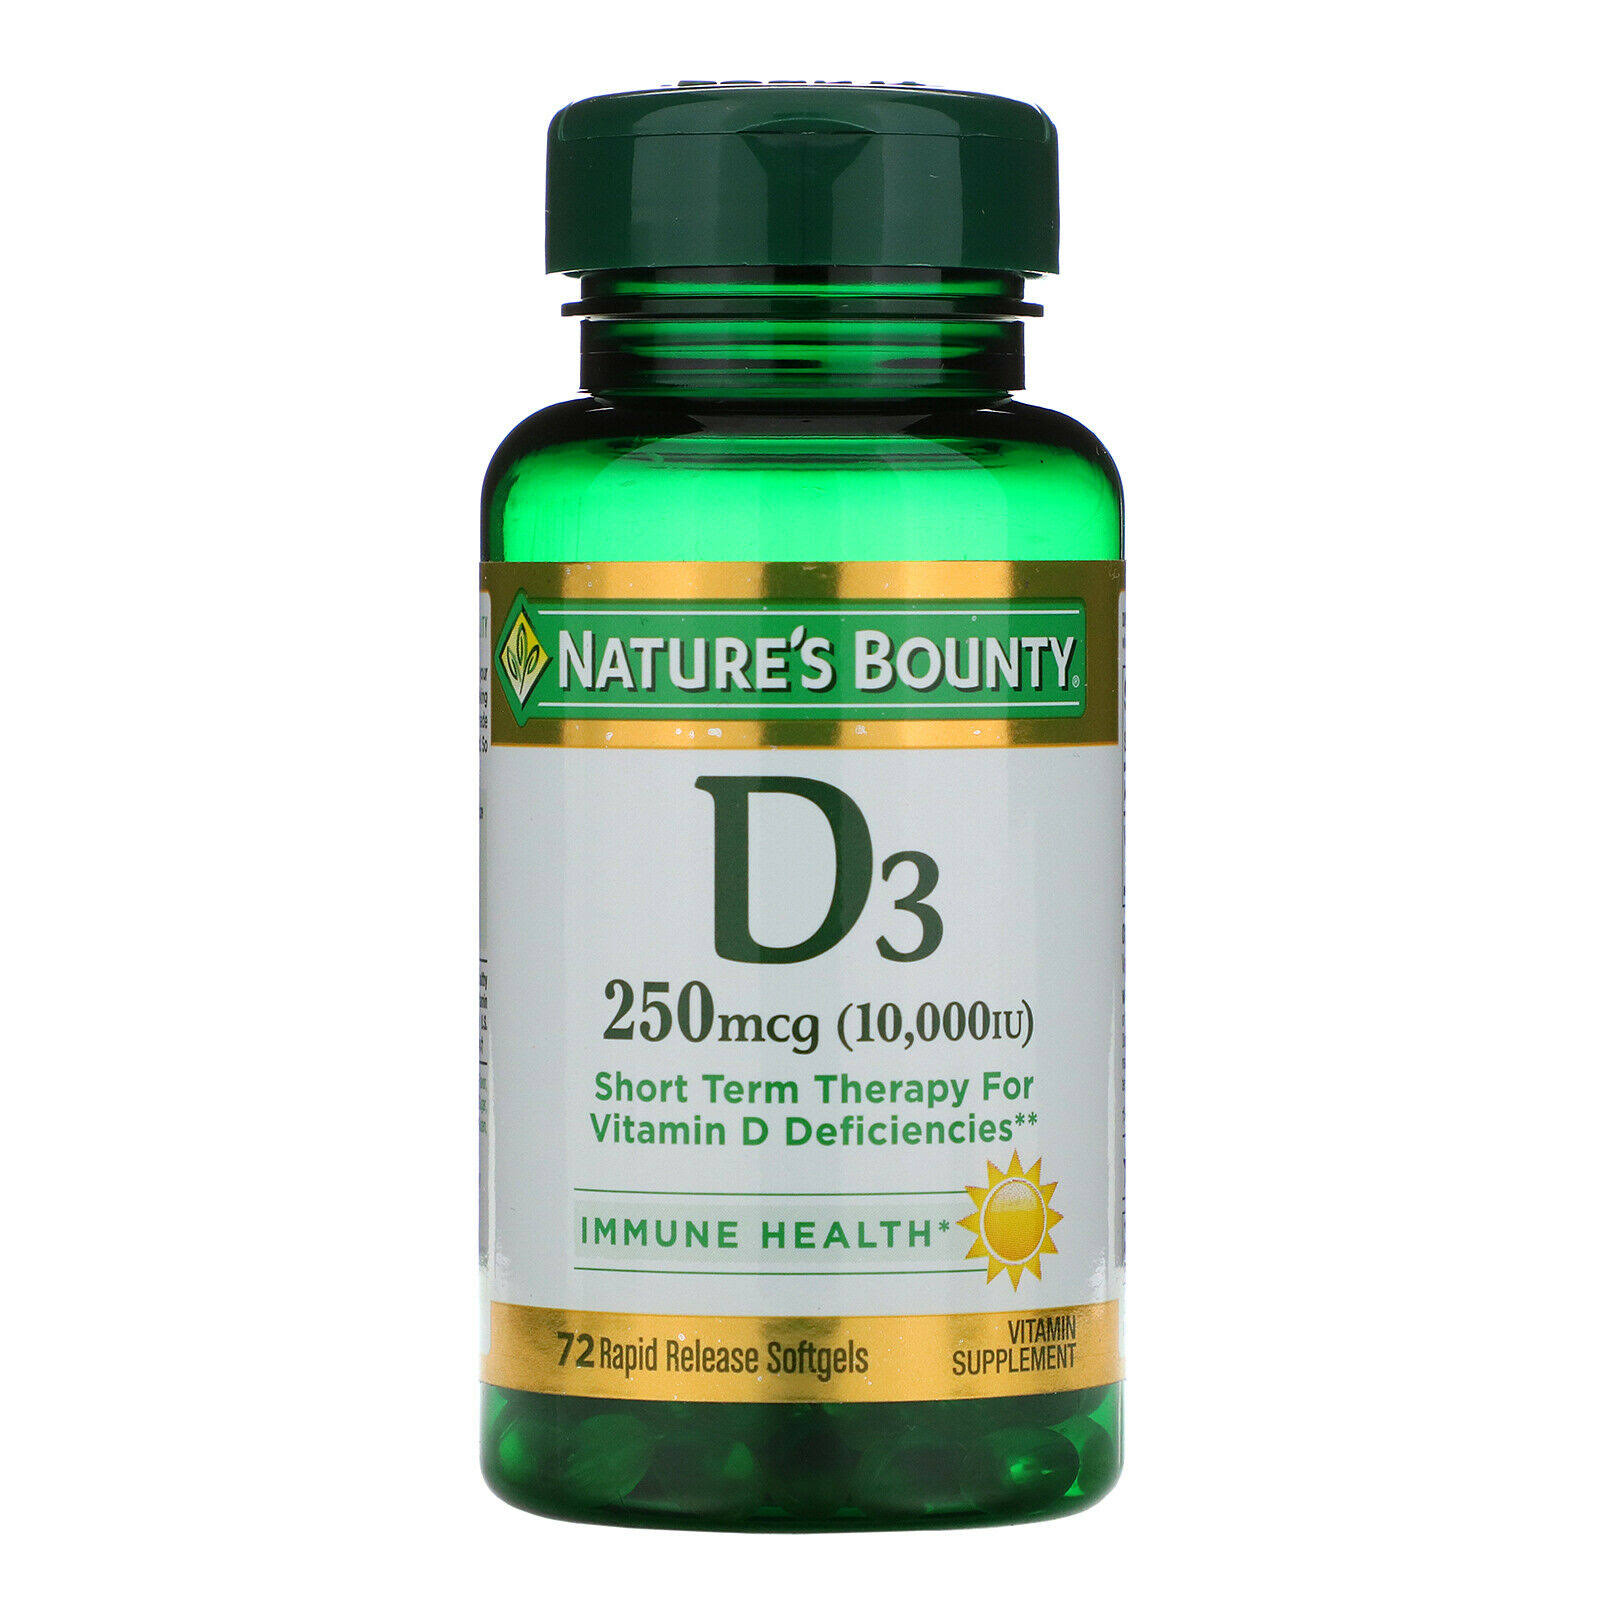 Nature's Bounty D3 10000 IU Vitamin Supplement Softgels - 72ct